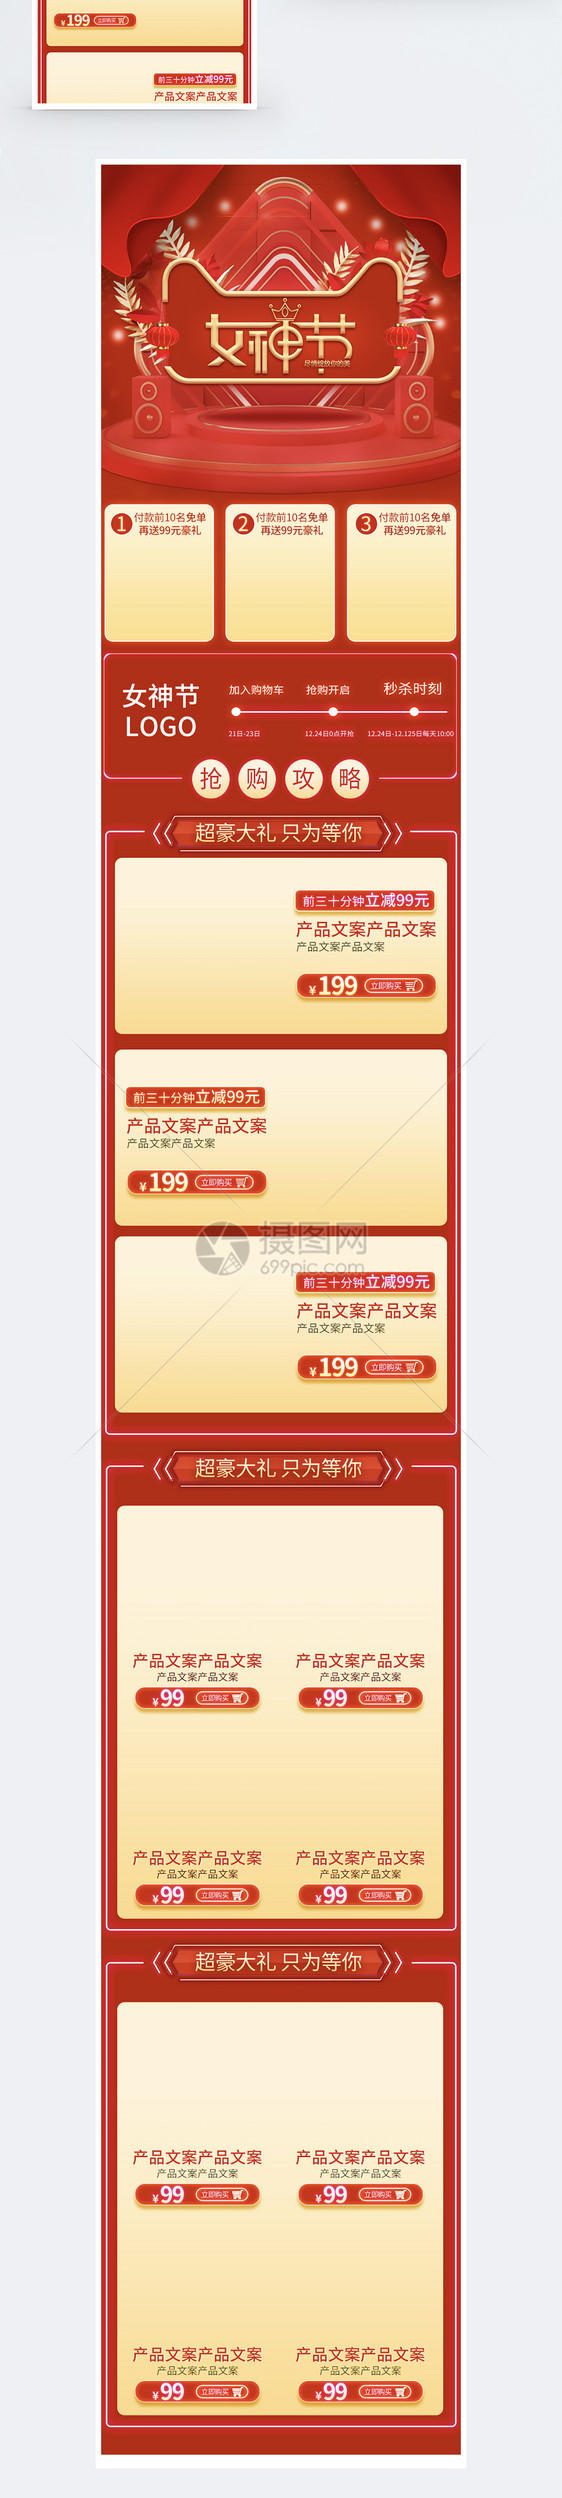 38女神节促销淘宝手机端模板图片